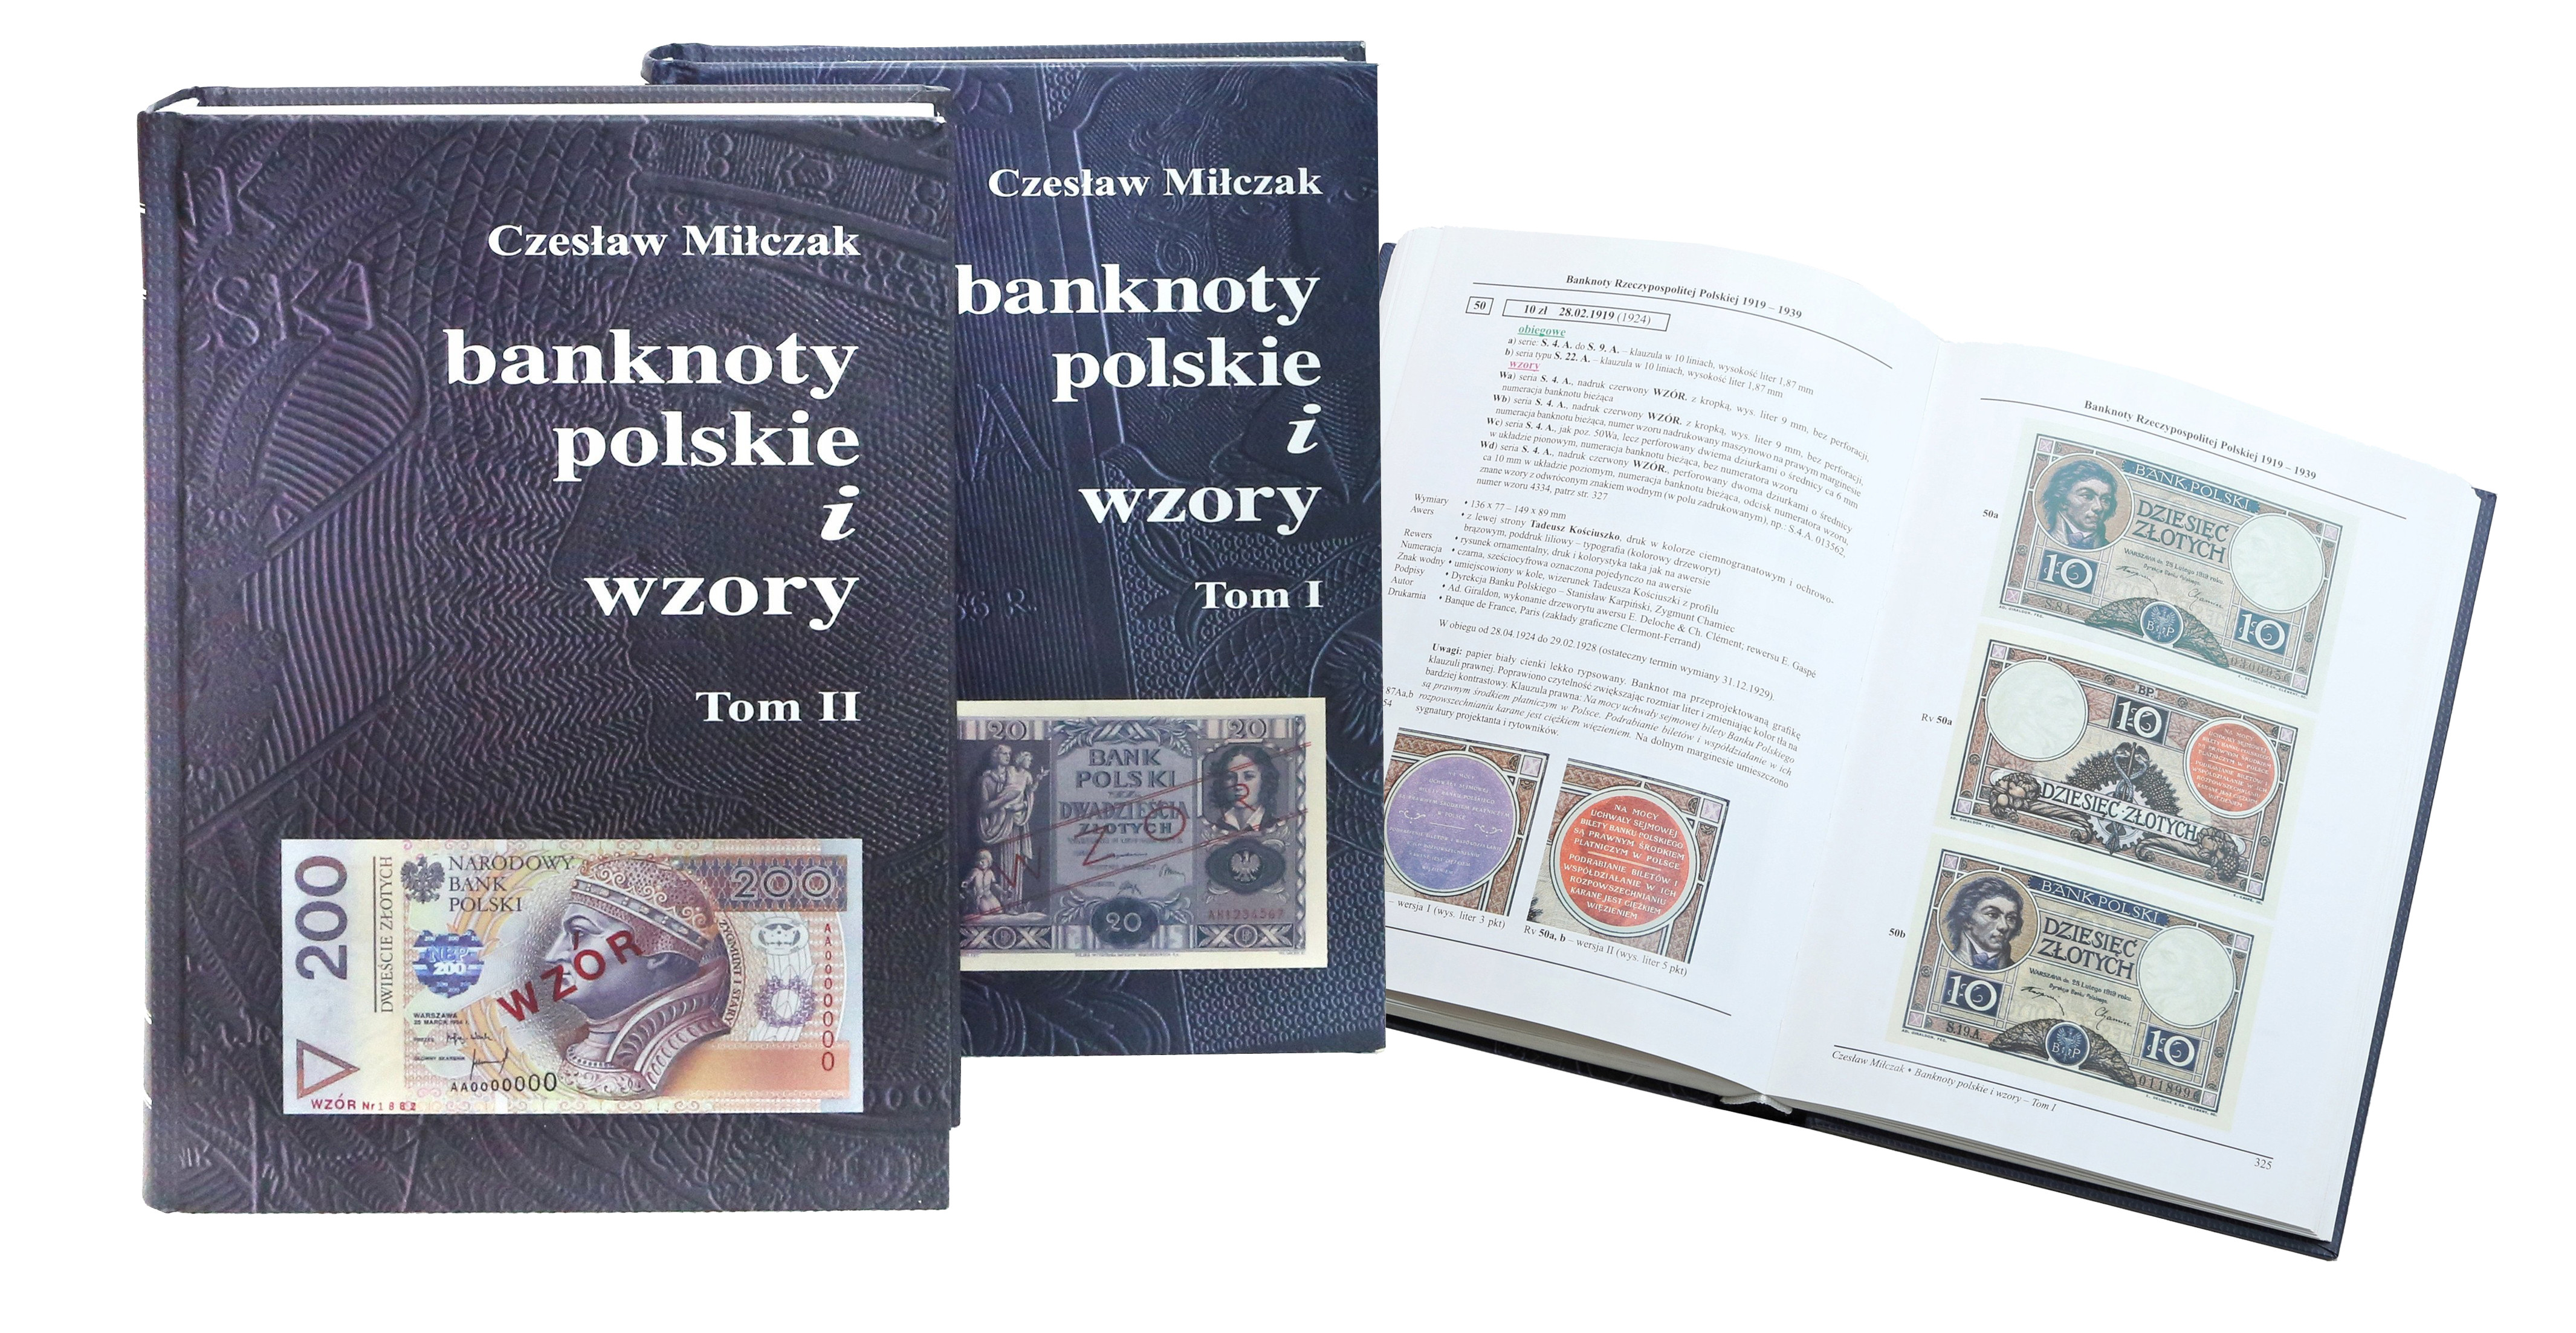 Banknoty polskie i wzory - Czesław Miłczak,  tom 1 i 2